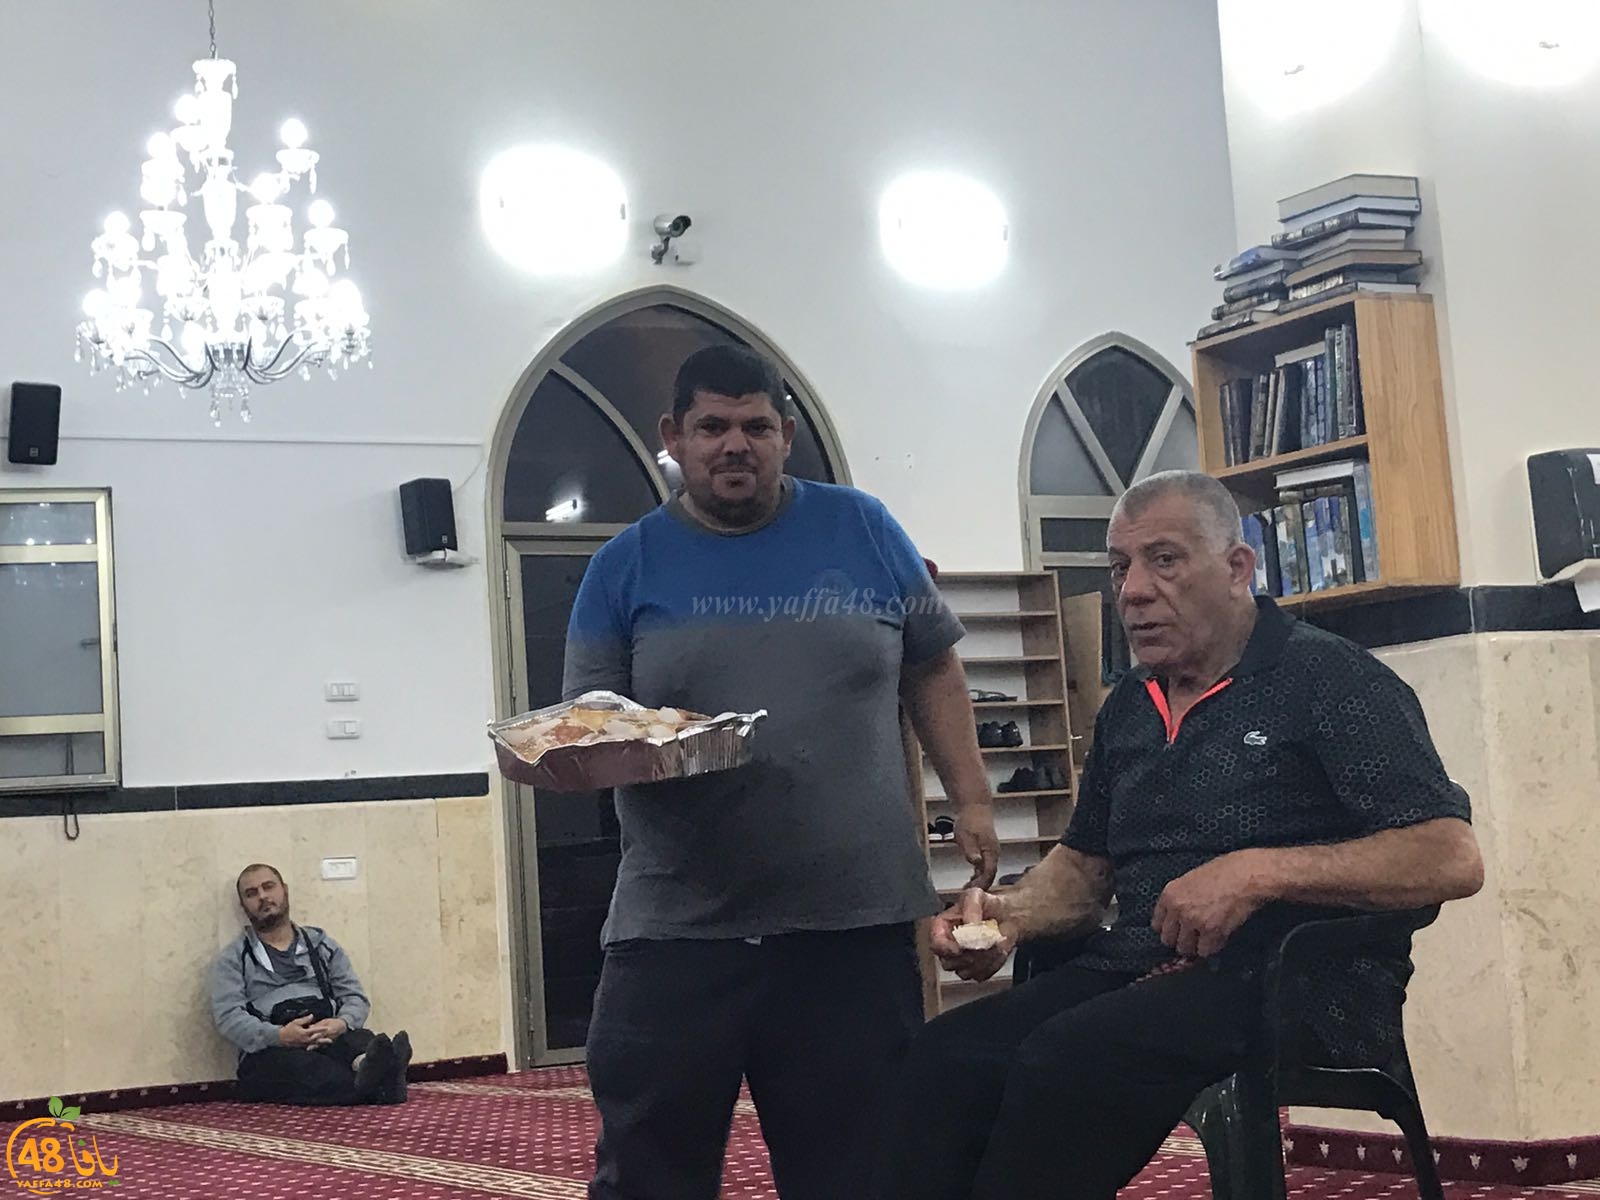  بالصور: الدرس الايماني الاسبوعي للشيخ أحمد سطل في مسجد الجبلية 